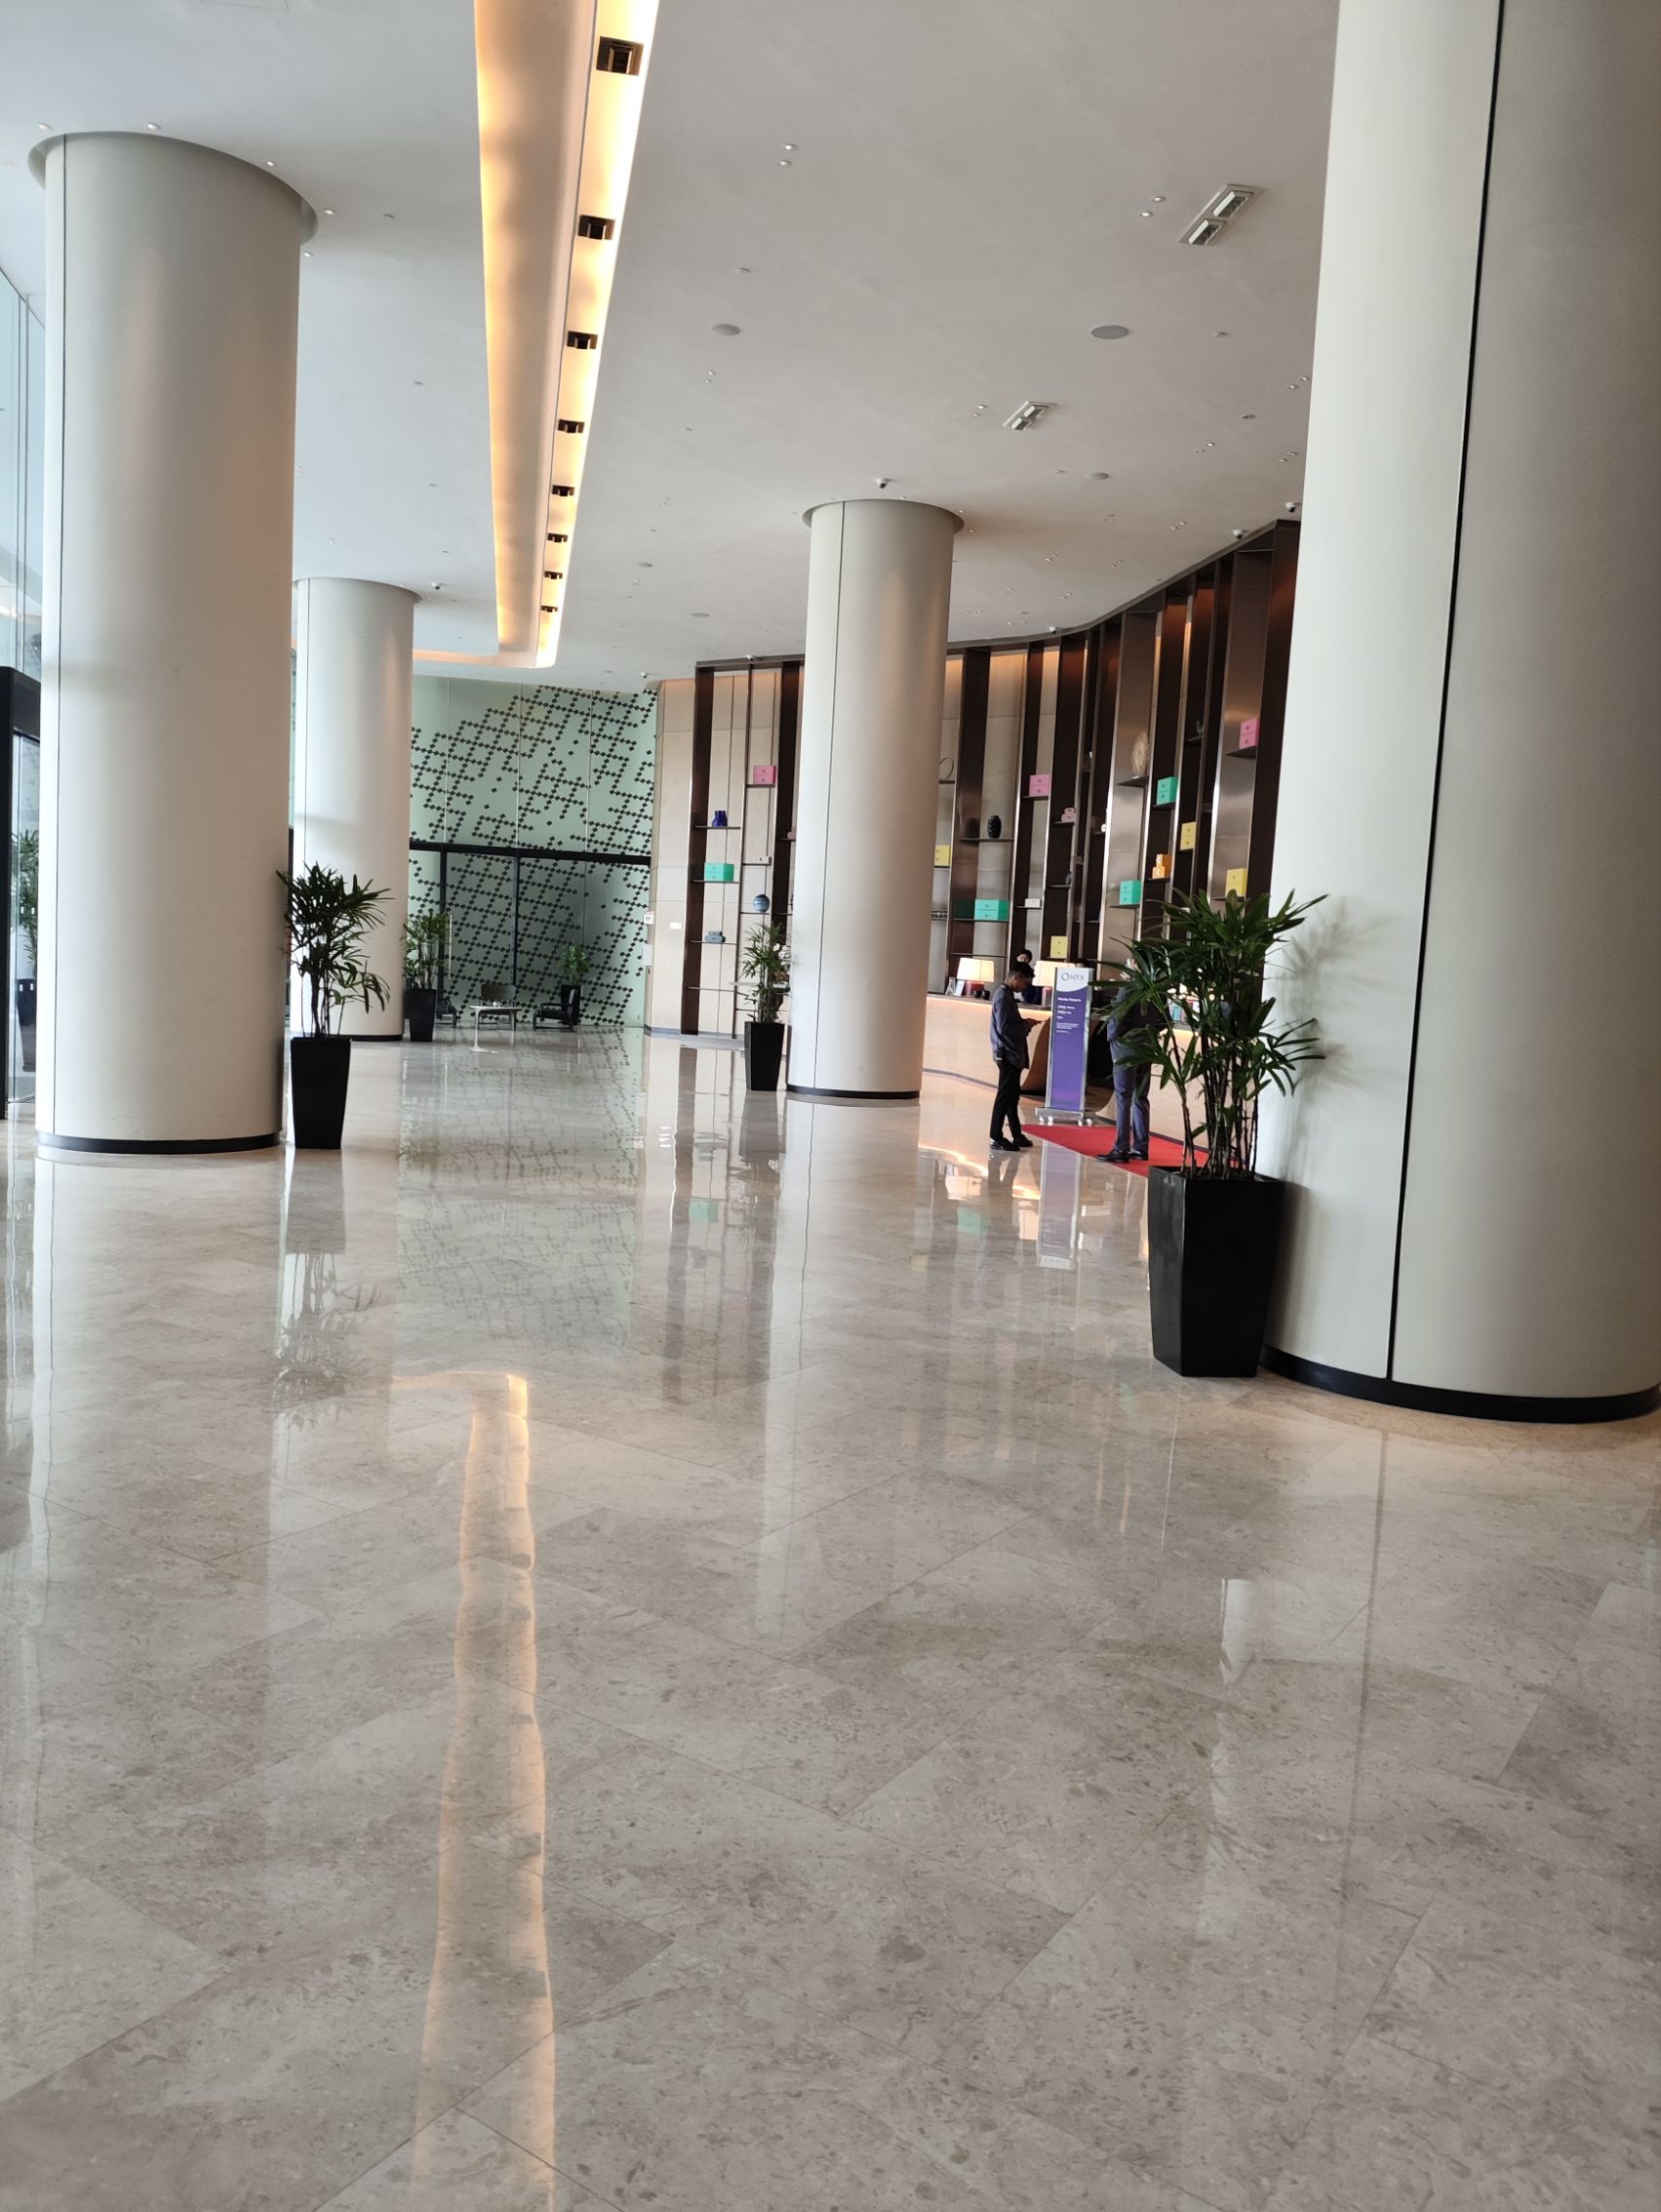 酒店非常新，属于槟城最新的五星级酒店，走进大堂，非常有现代设计感。大堂的下午茶值得去打卡，非常美味的